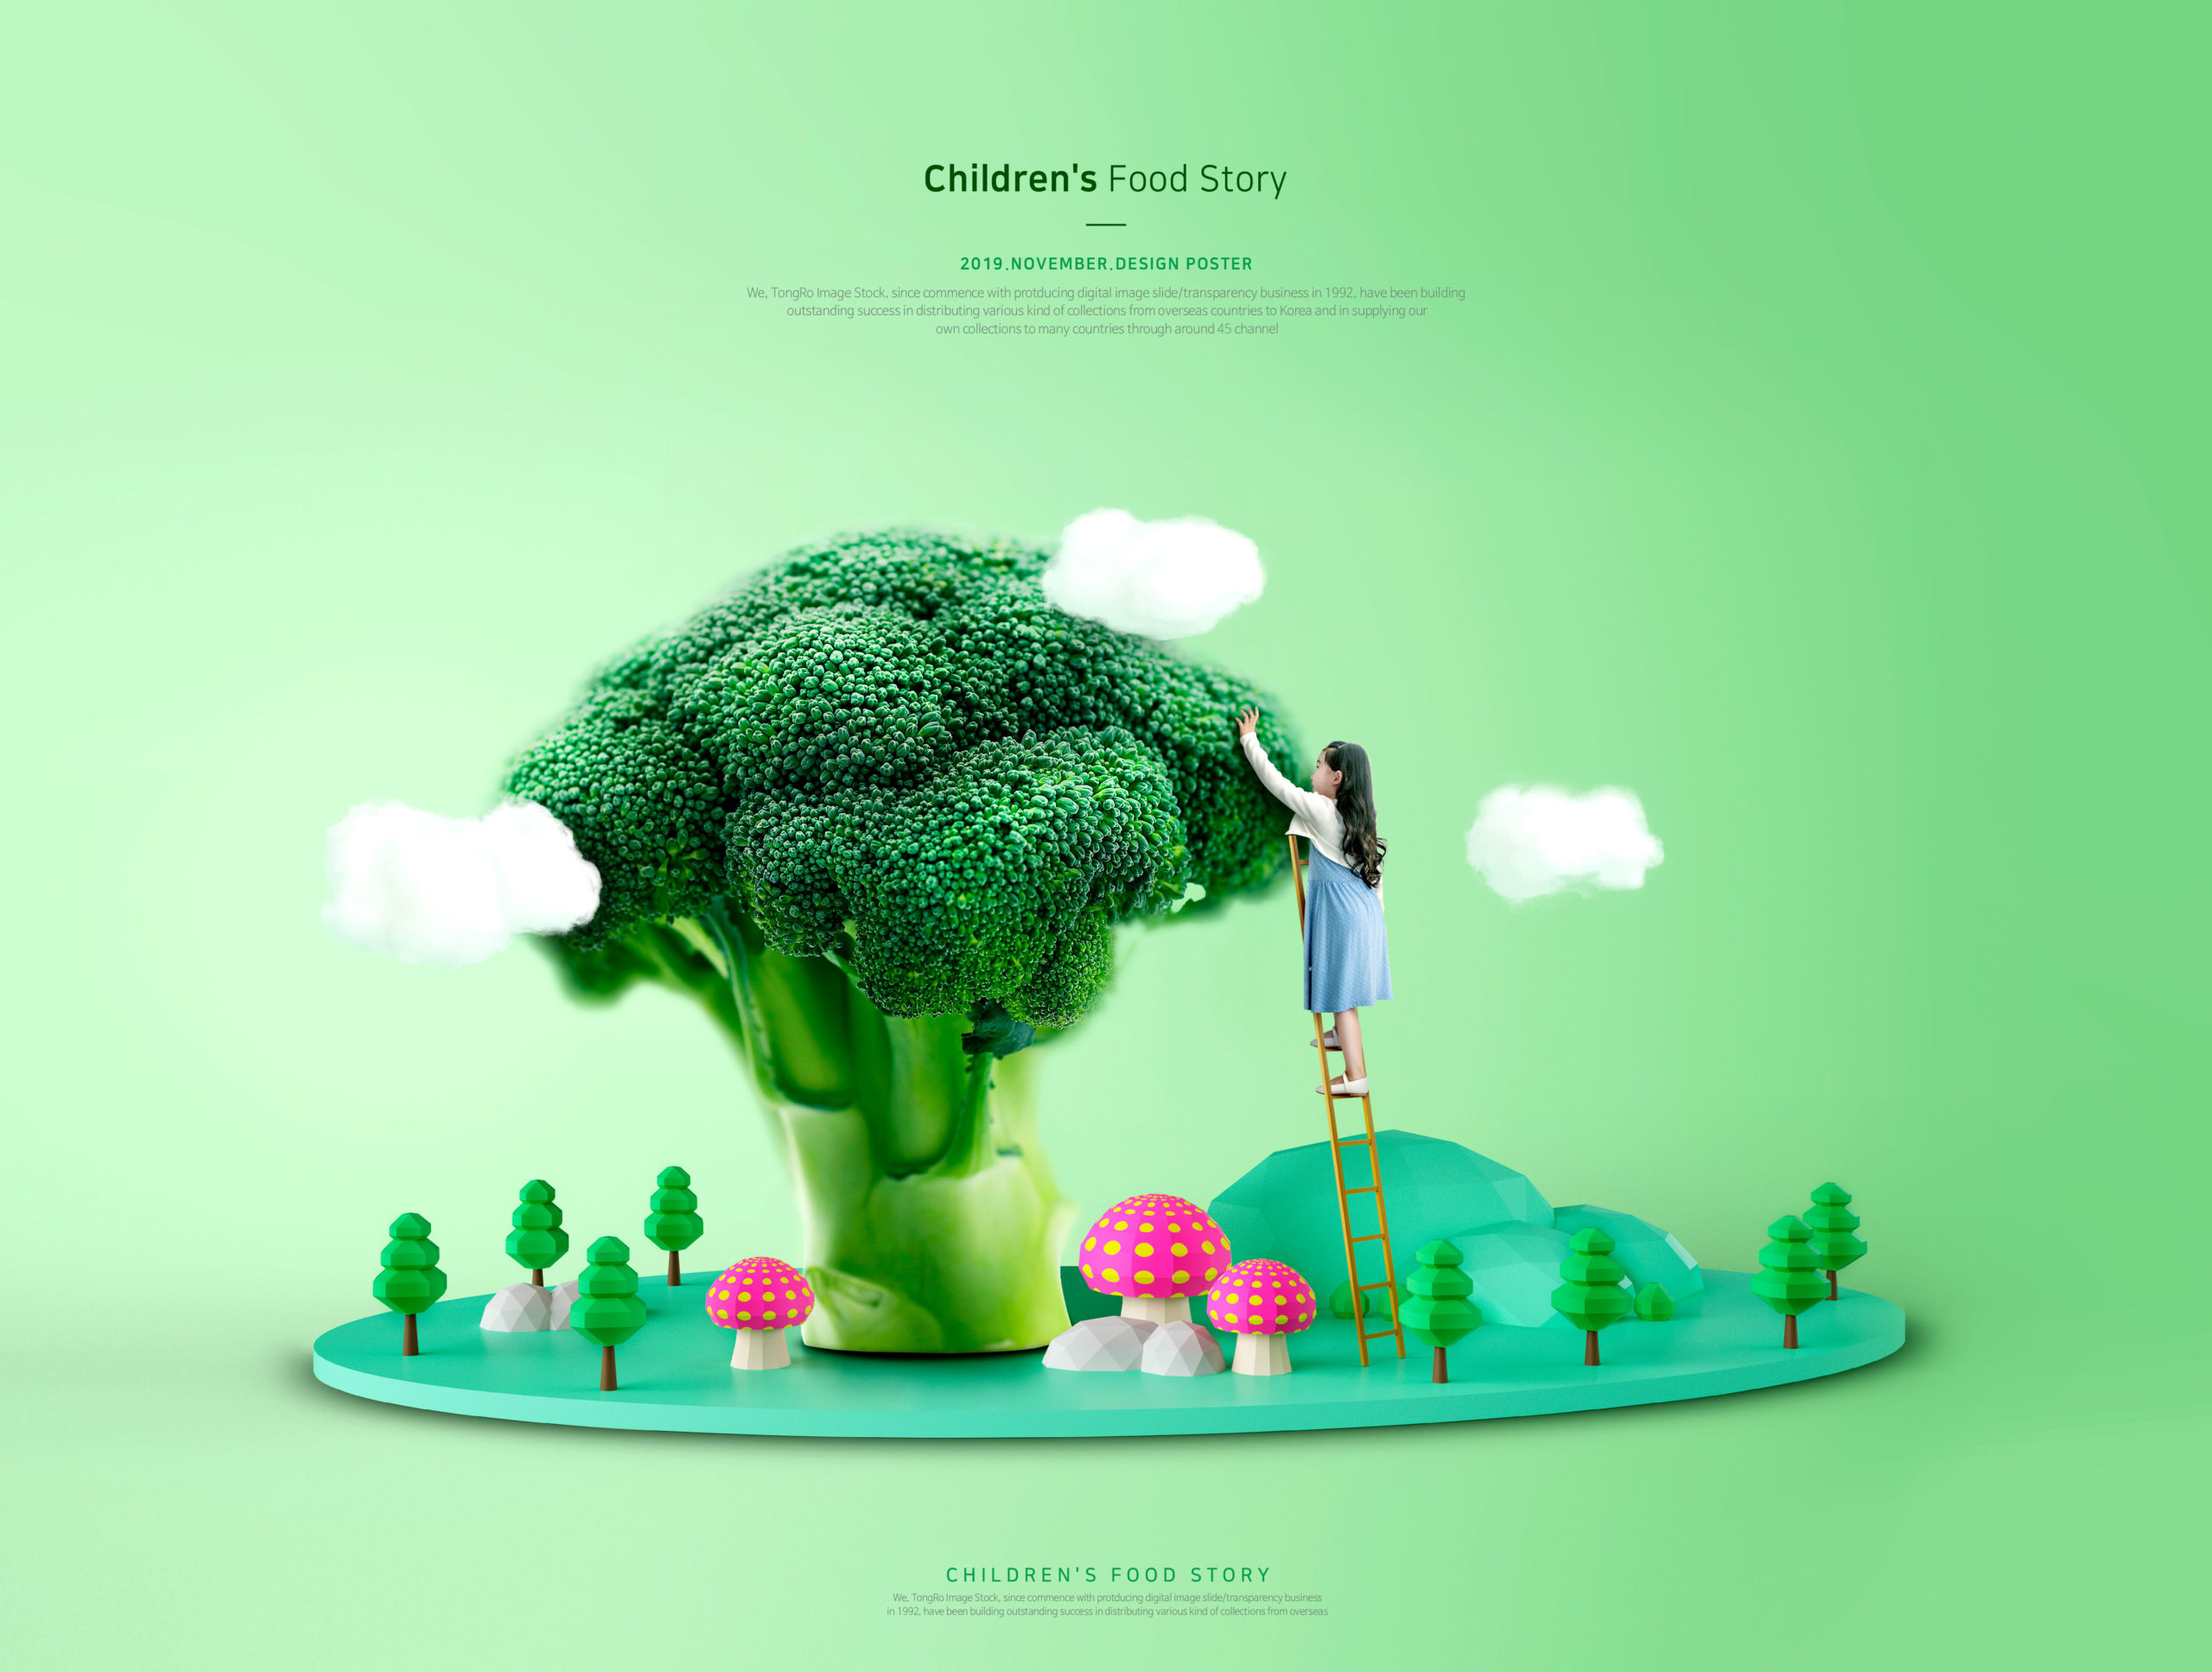 西兰花蔬菜&儿童故事绿色系海报PSD素材素材库精选模板插图